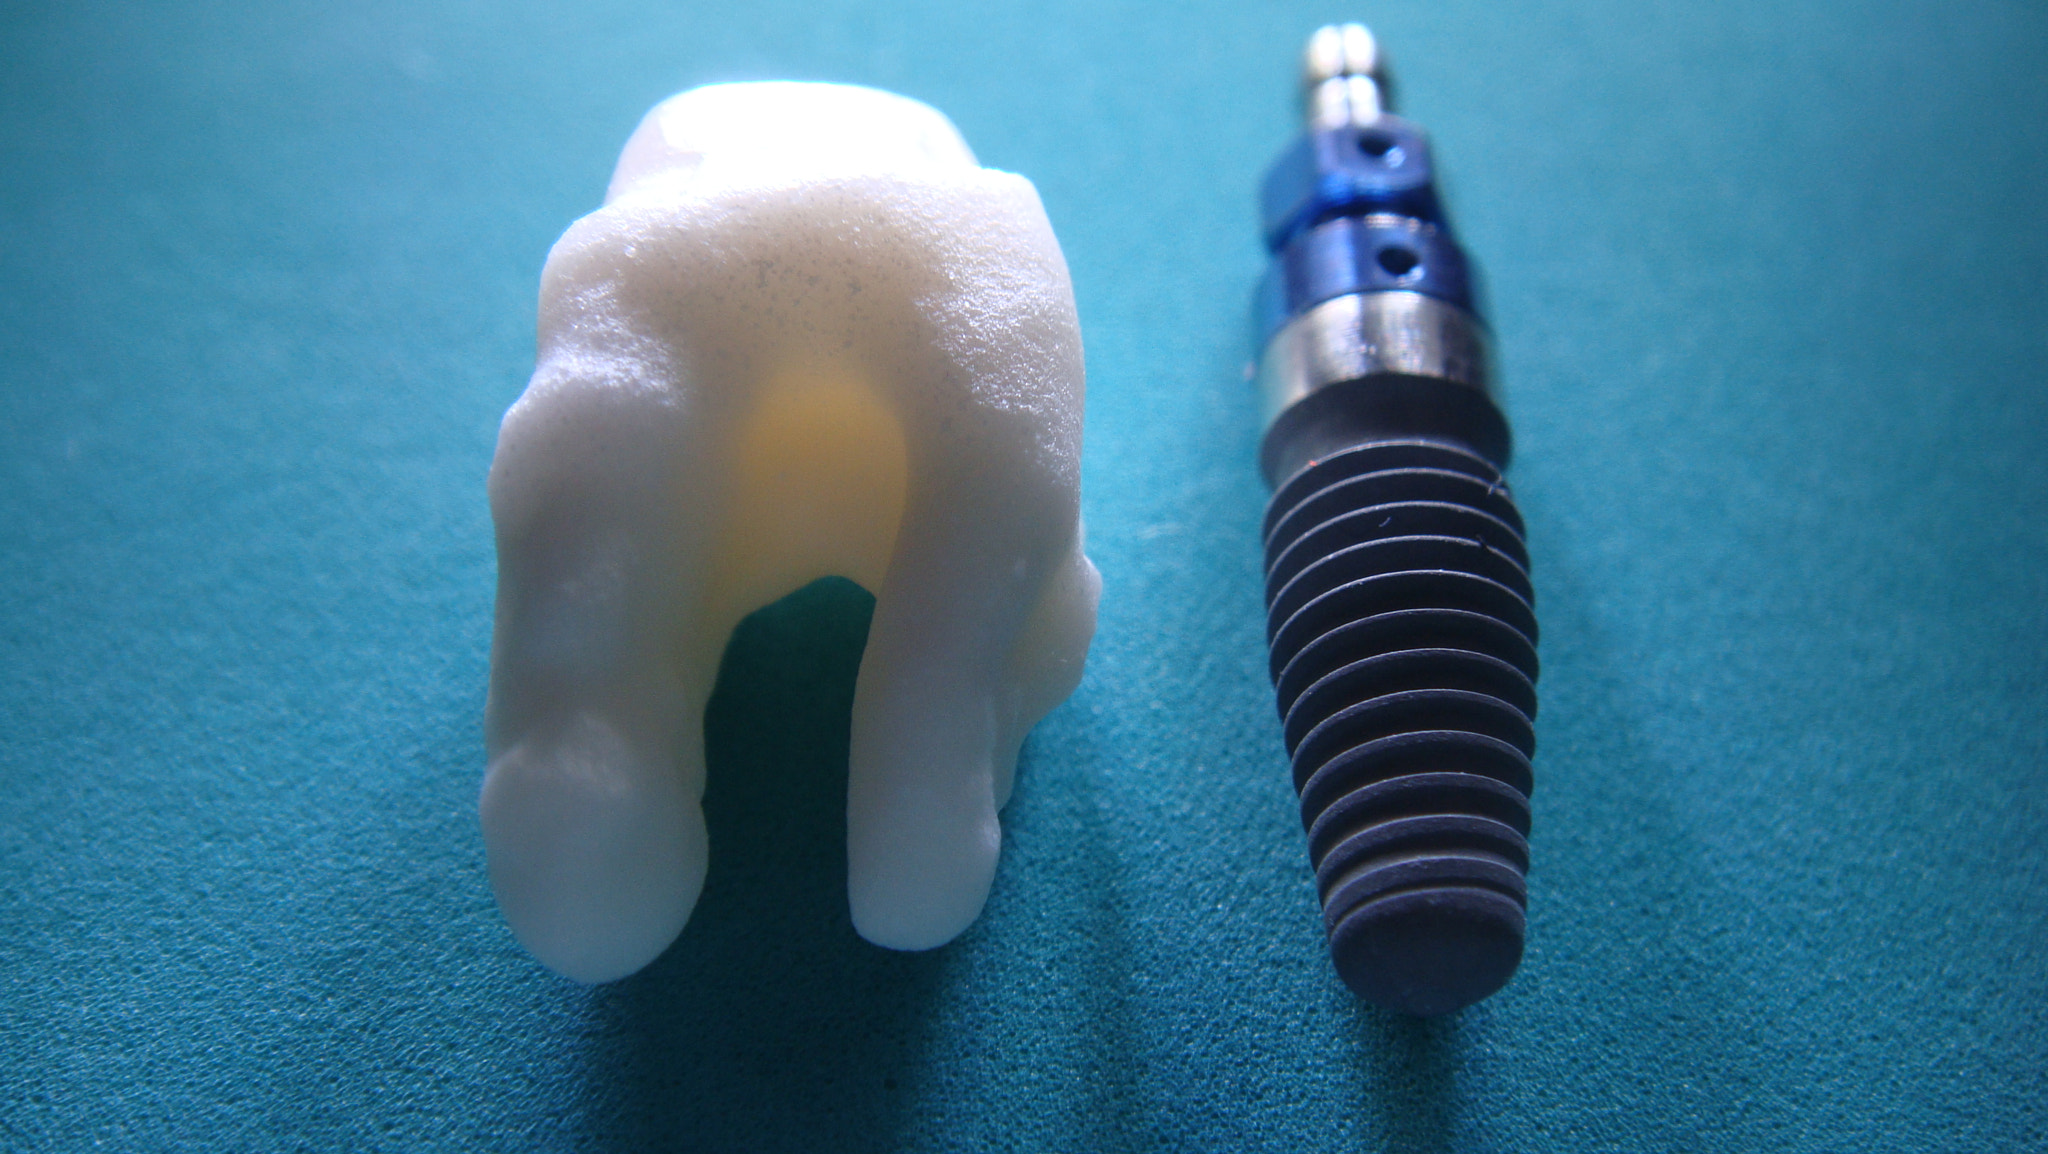 Sony DSC-T700 sample photo. Dental implants hammond, louisiana photography